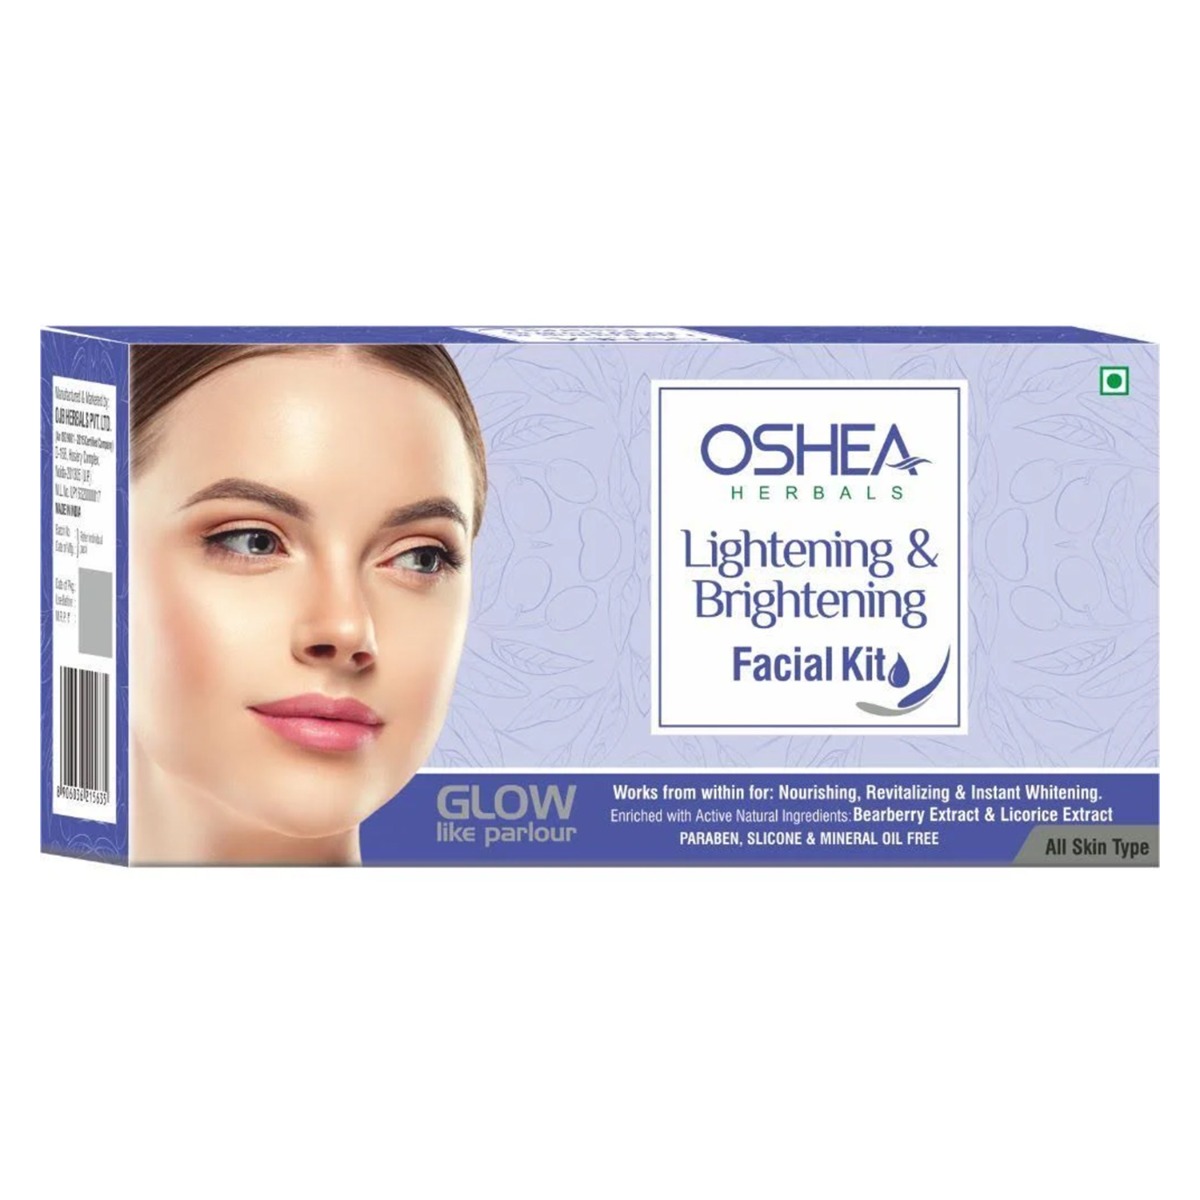 Oshea Herbals Lightening & Brightening Facial Kit, 330gm